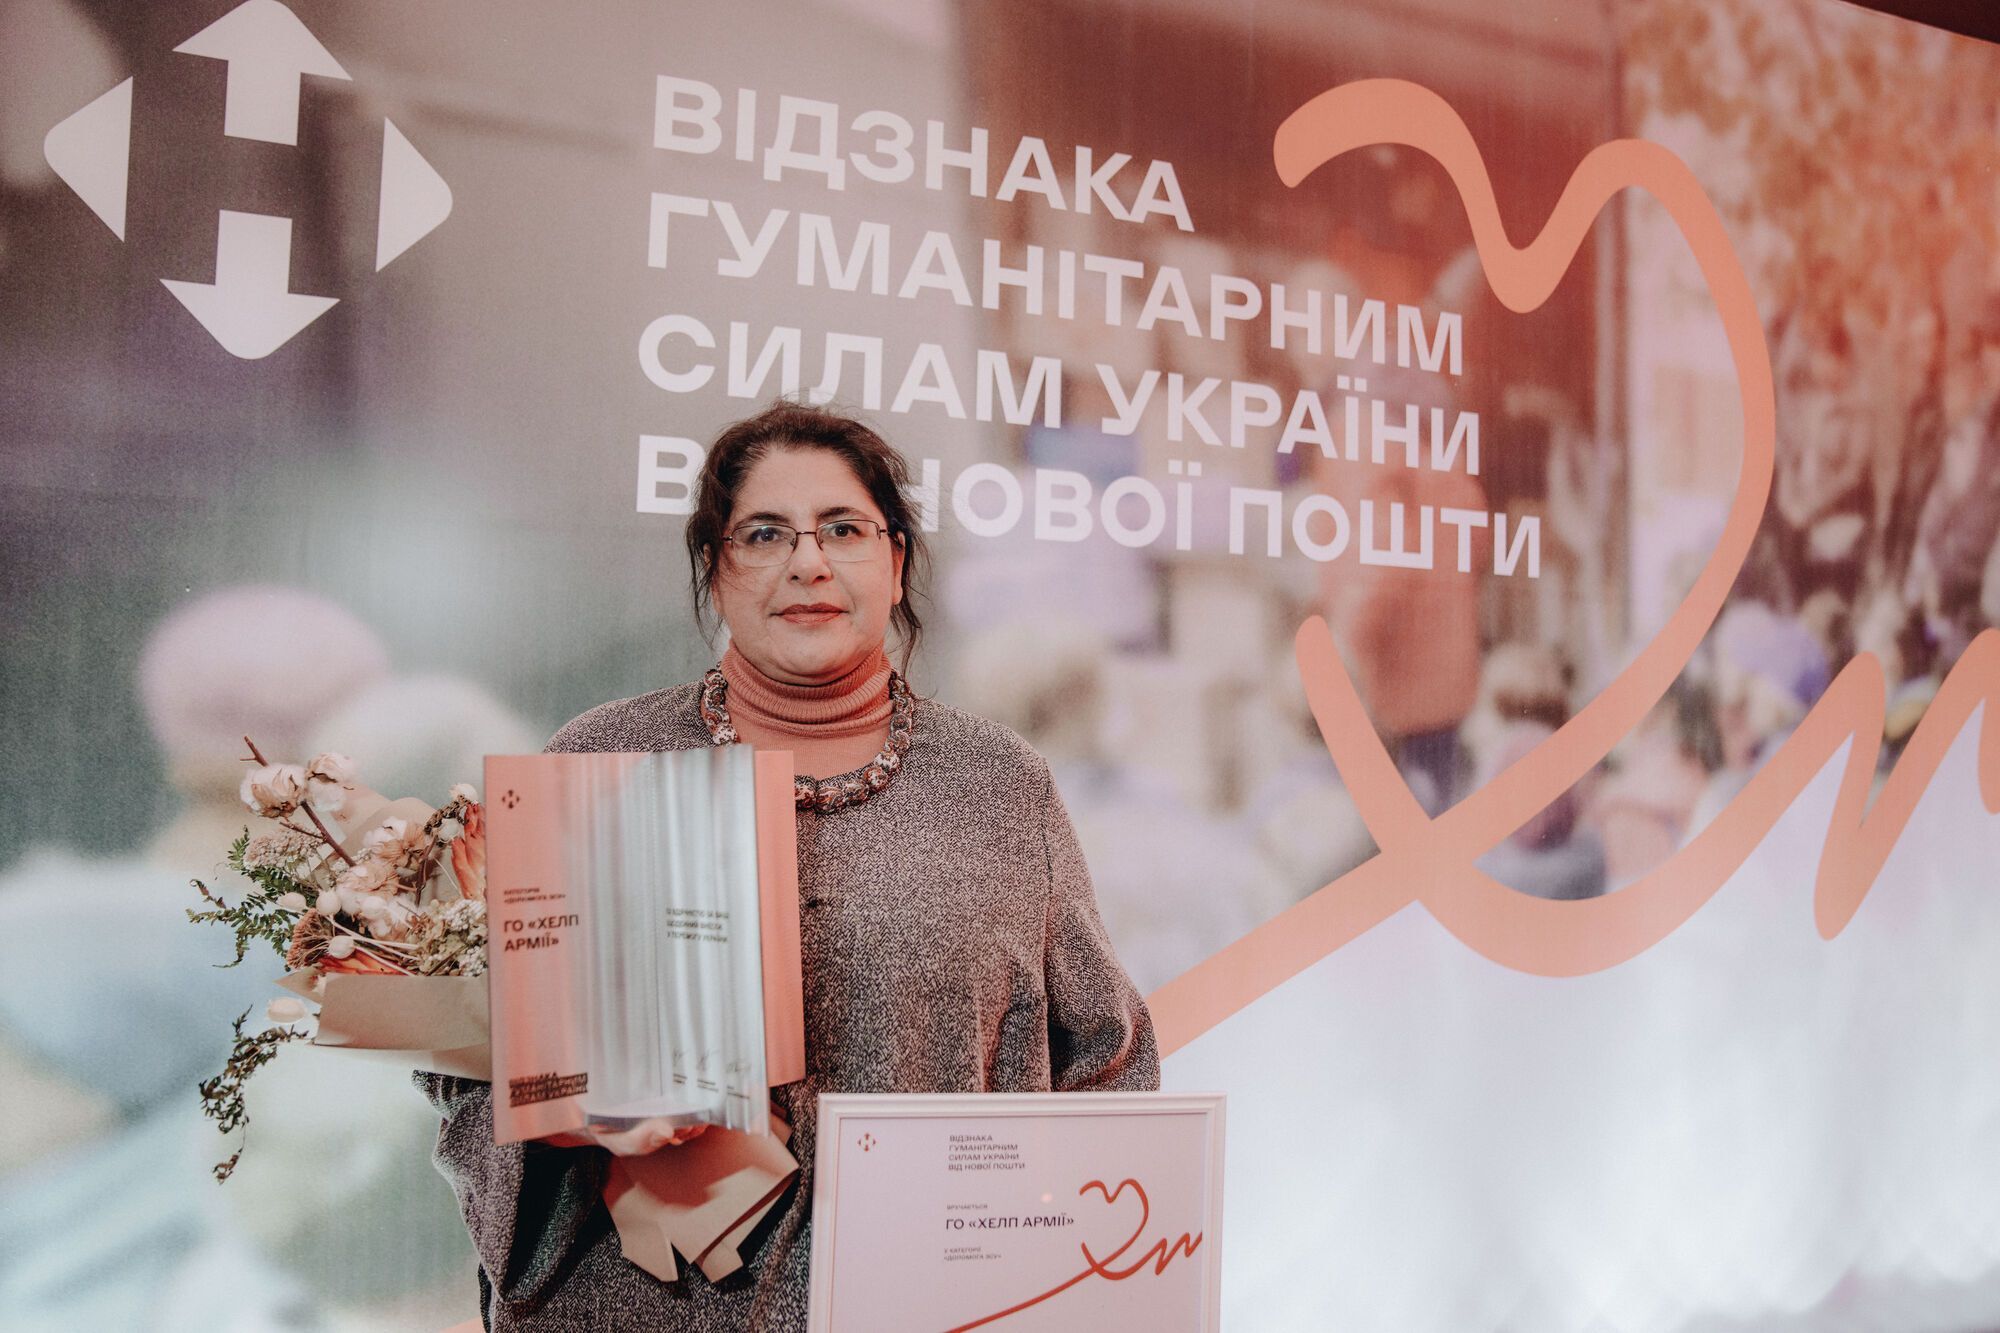 Гуманитарные силы Украины: благотворительные фонды и волонтеры получили специальную награду за помощь украинцам во время войны